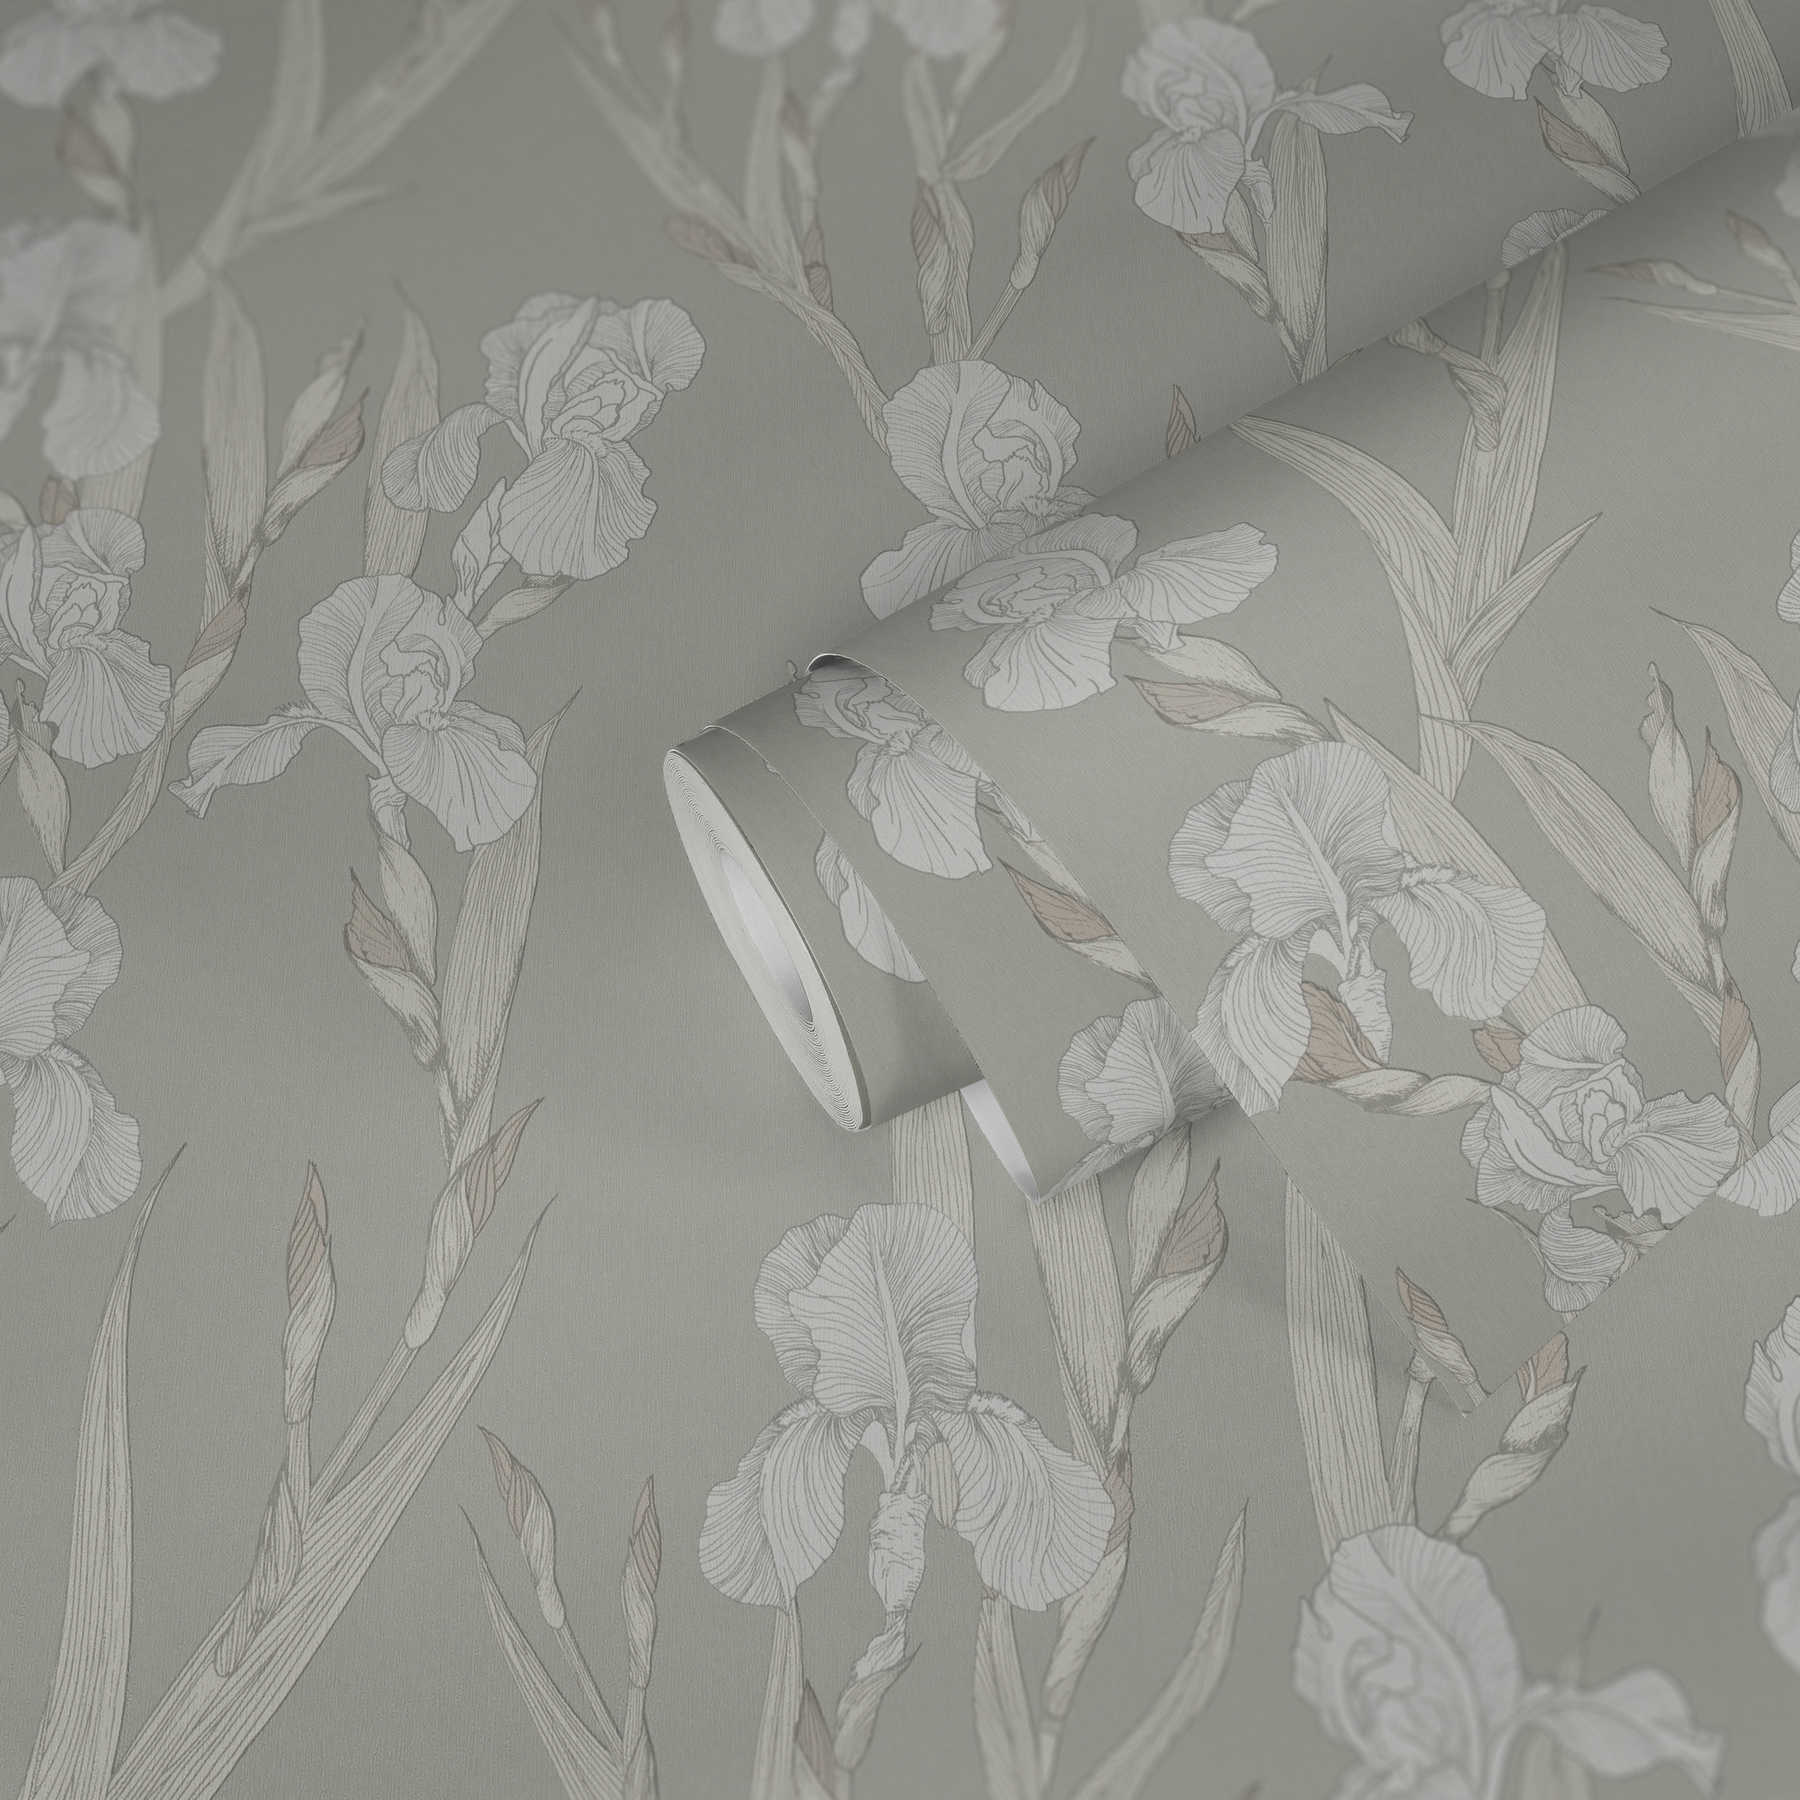             Papier peint fleuri stylisé, rinceaux de fleurs & design moderne - gris, blanc
        